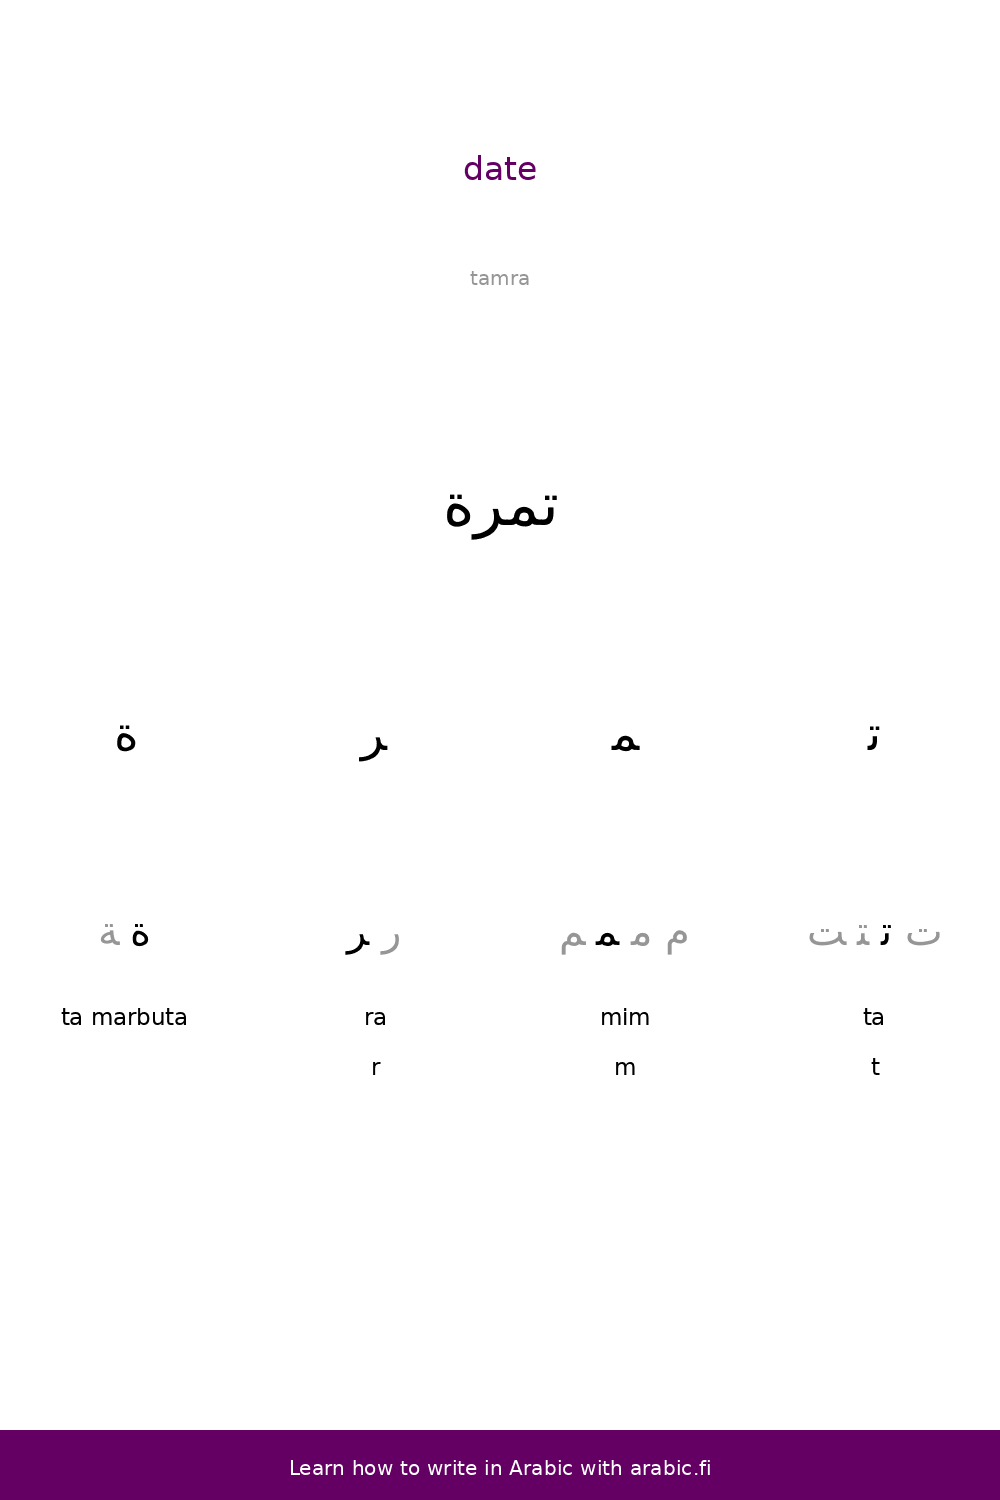 Date – an Arabic word